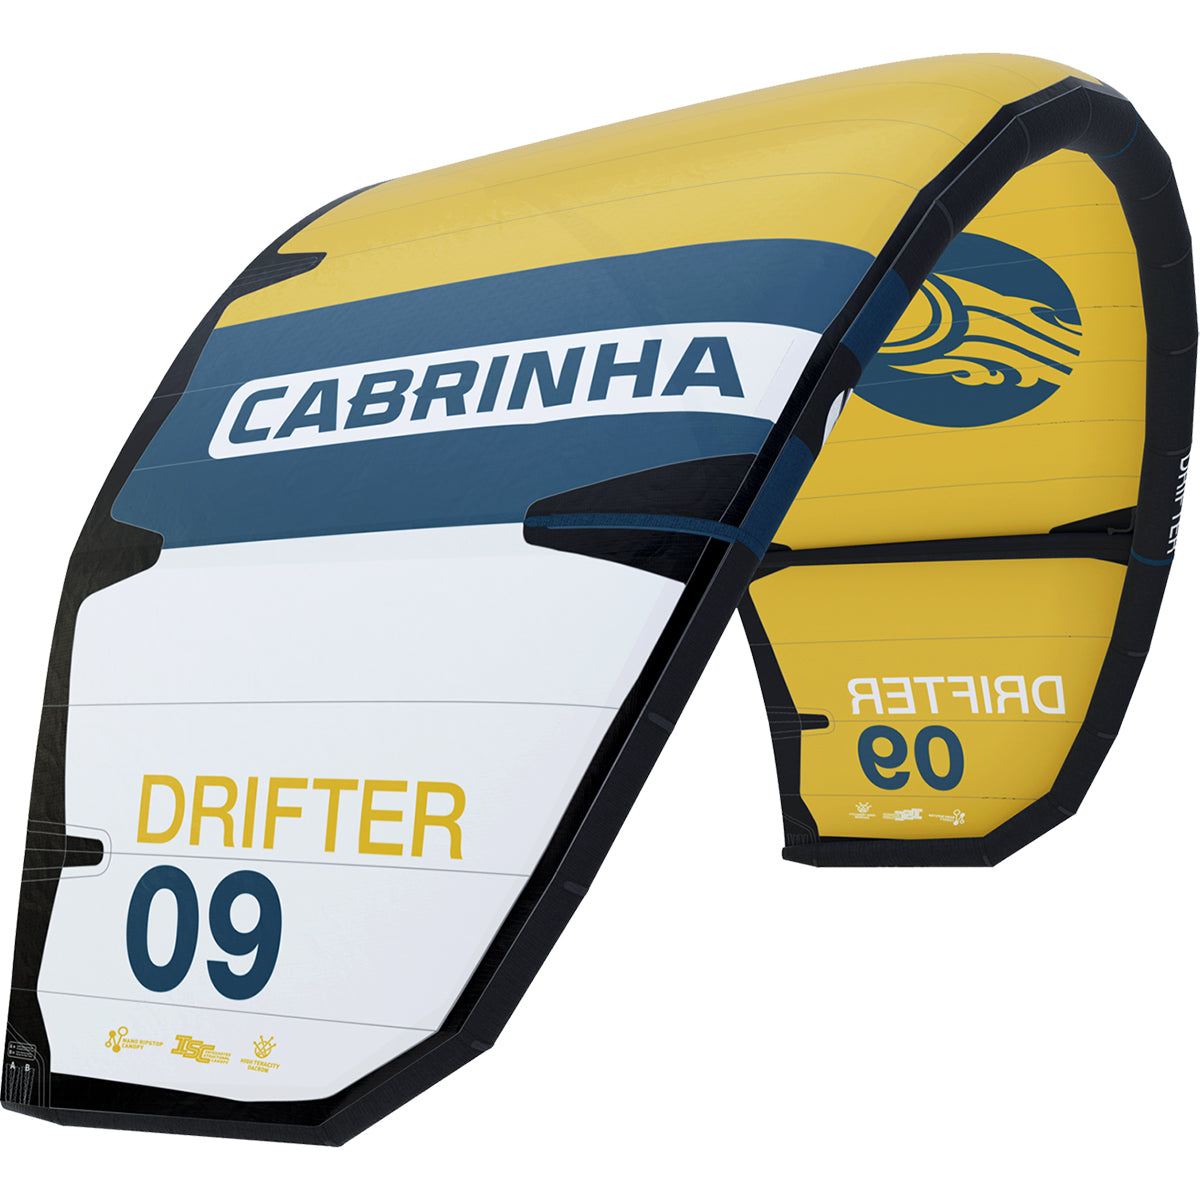 Cabrinha 24 Drifter only – Kite